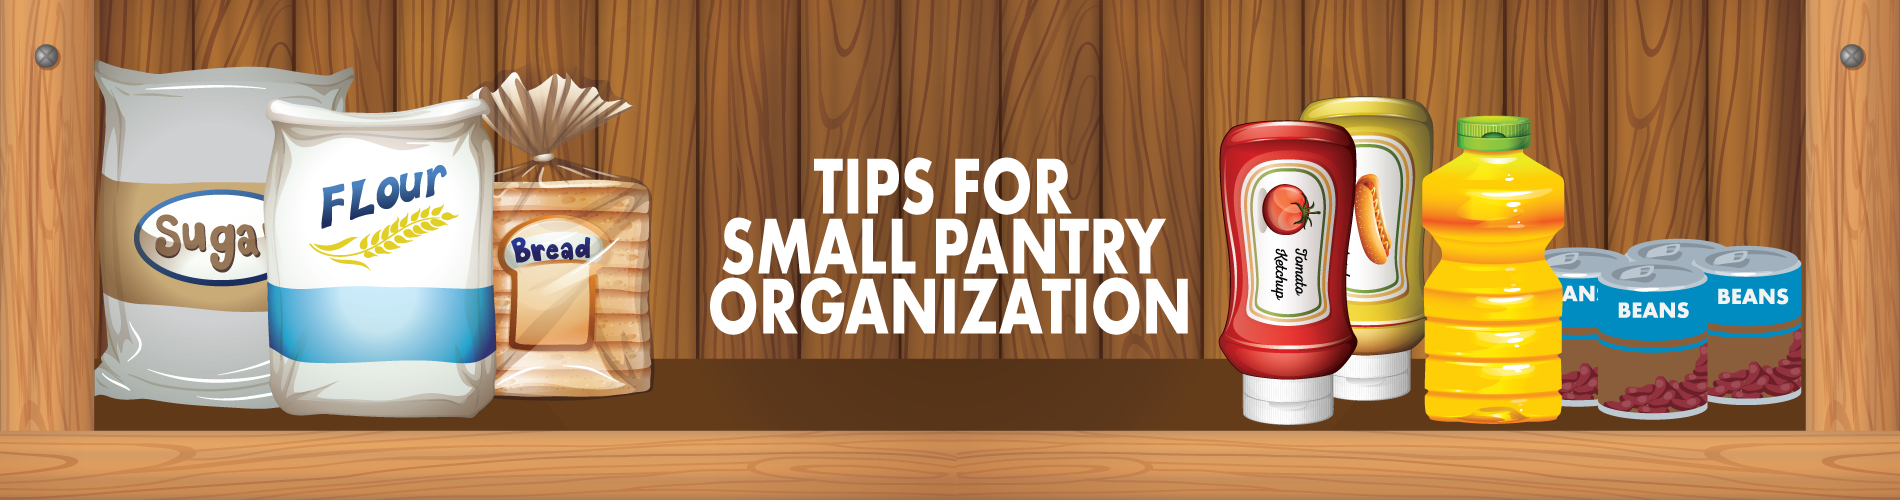 small panty organization